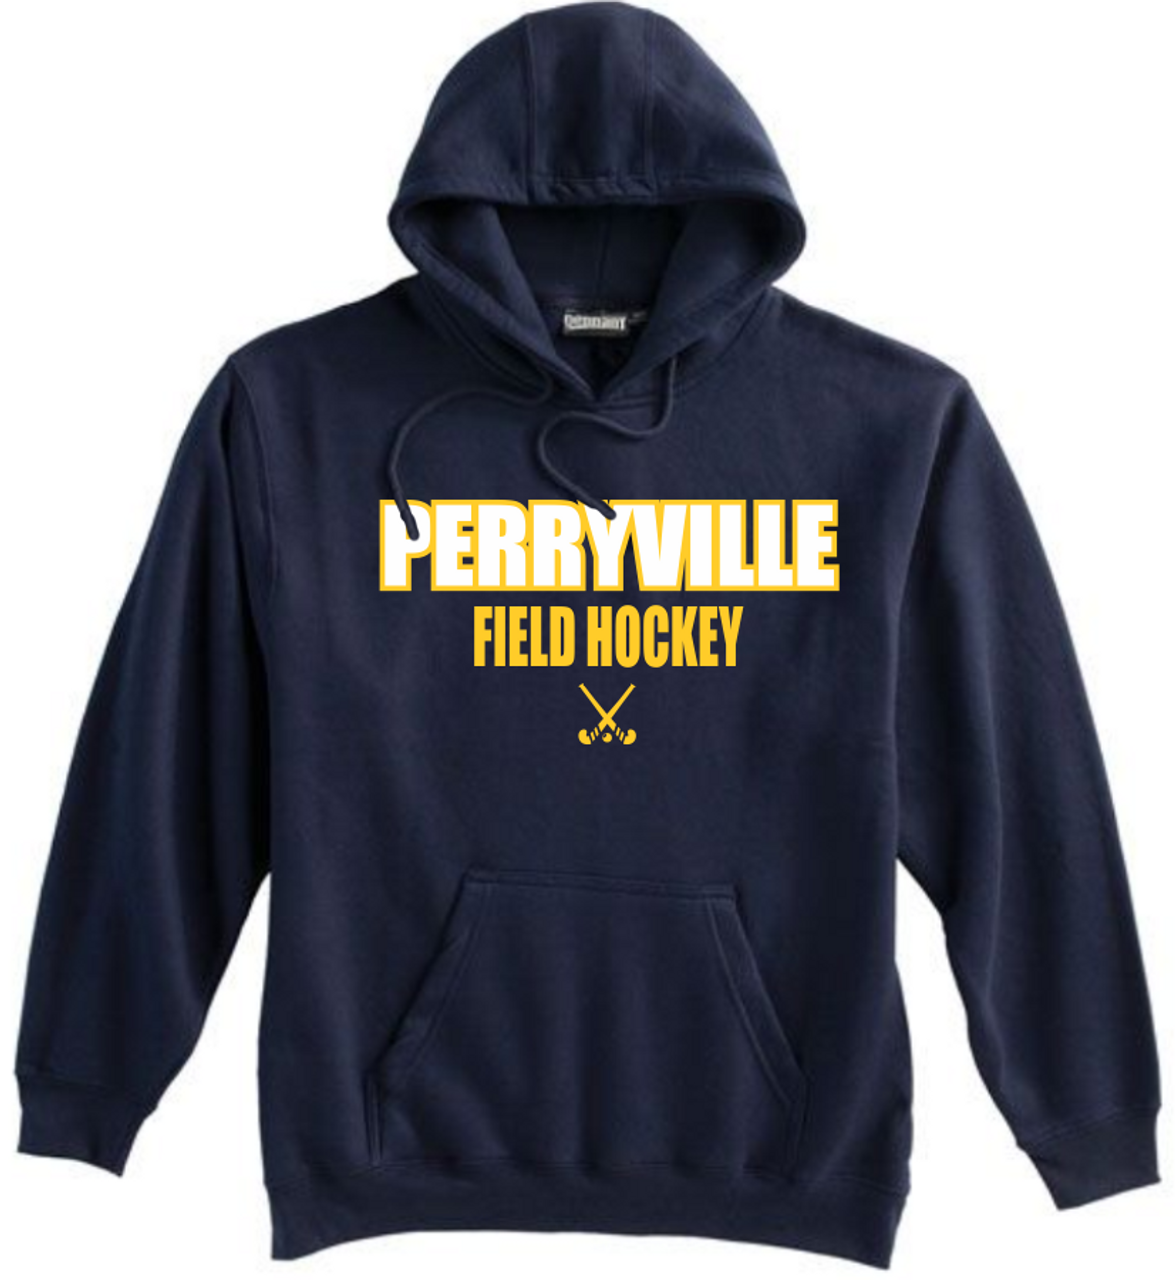 Perryville Field Hockey Hoodie, Navy